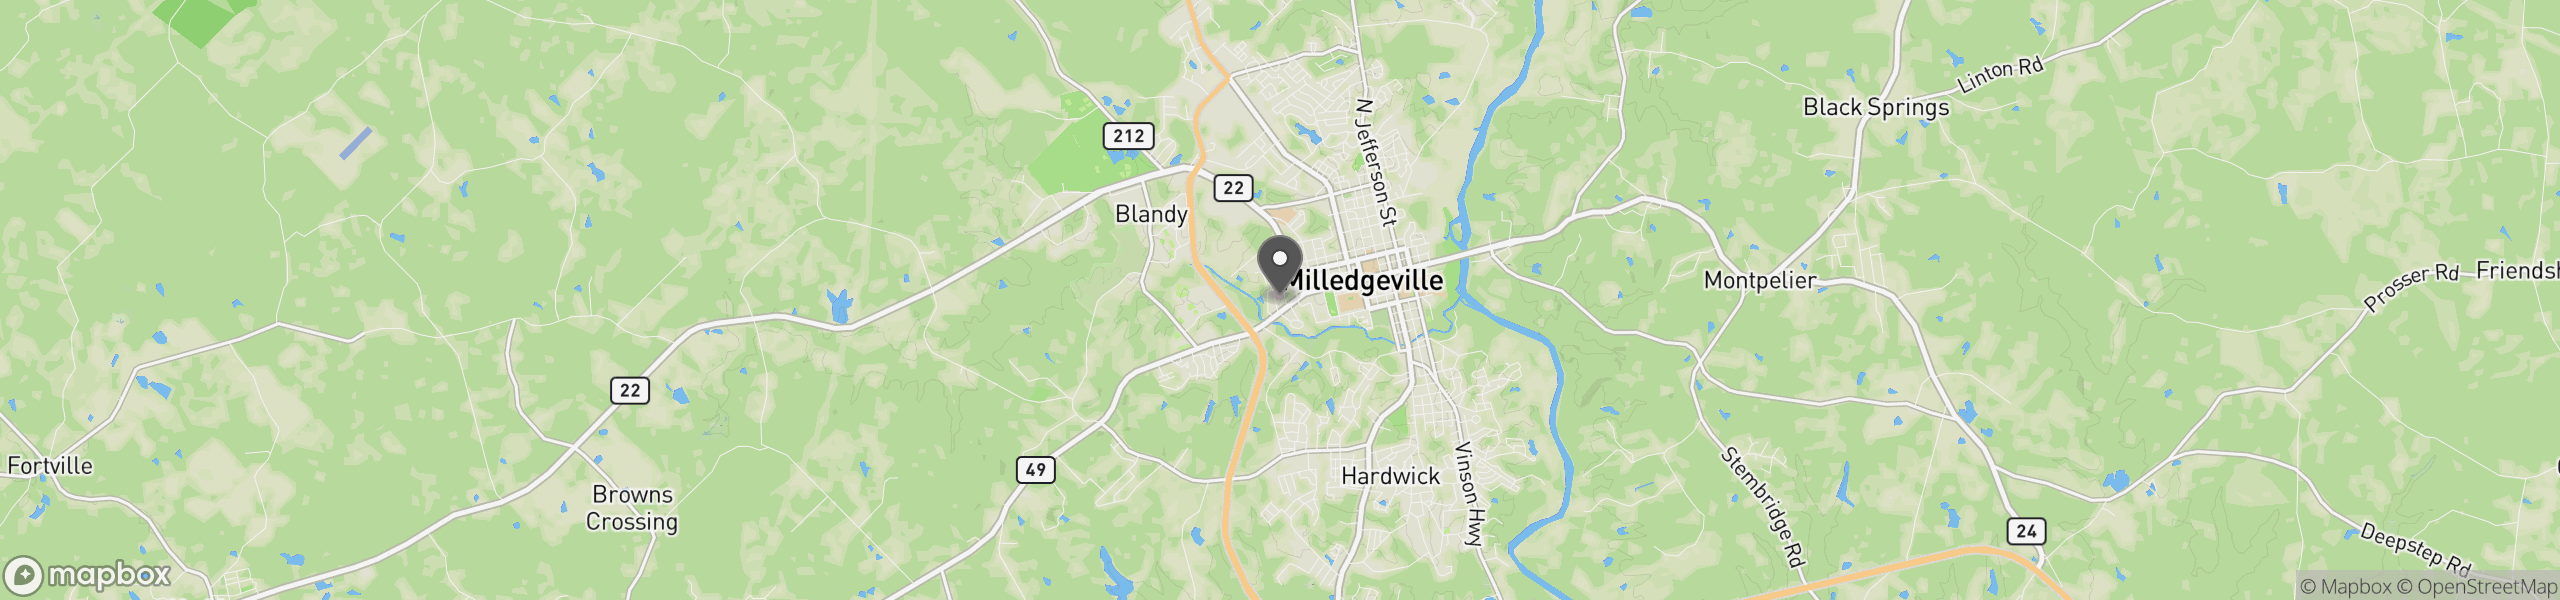 Milledgeville, GA 31061